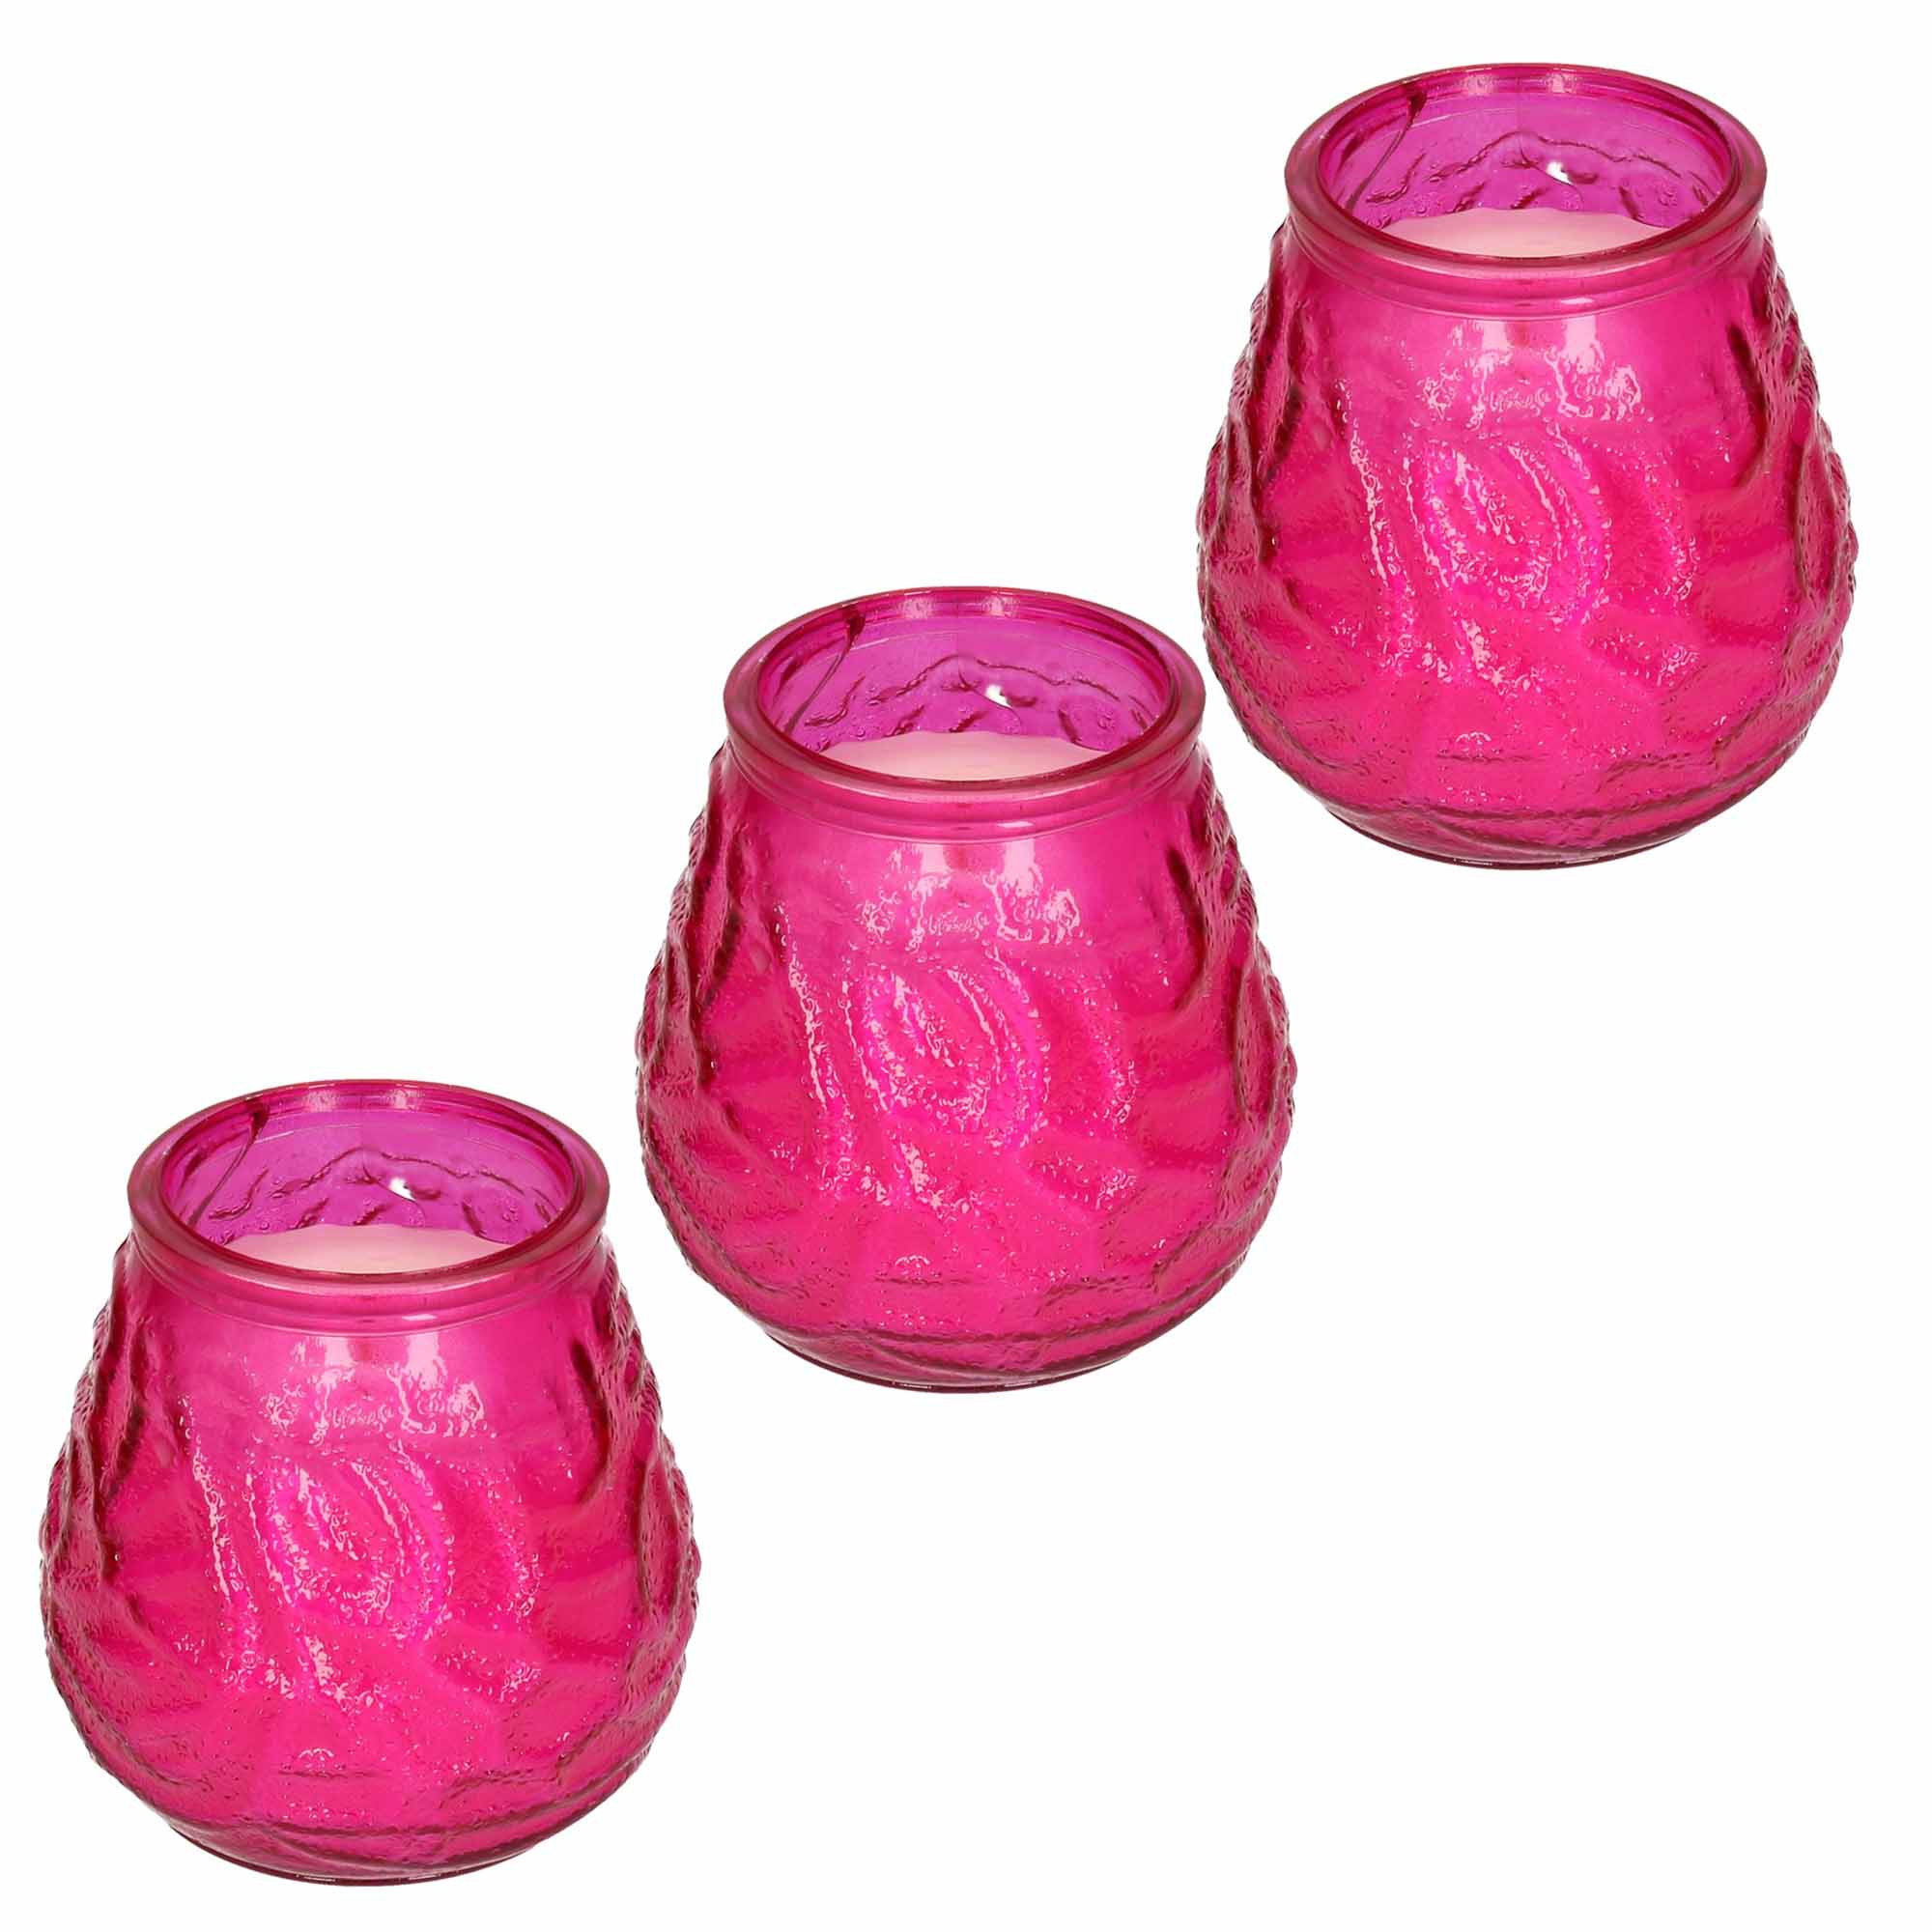 Windlicht geurkaars 3x roze glas 48 branduren citrusgeur